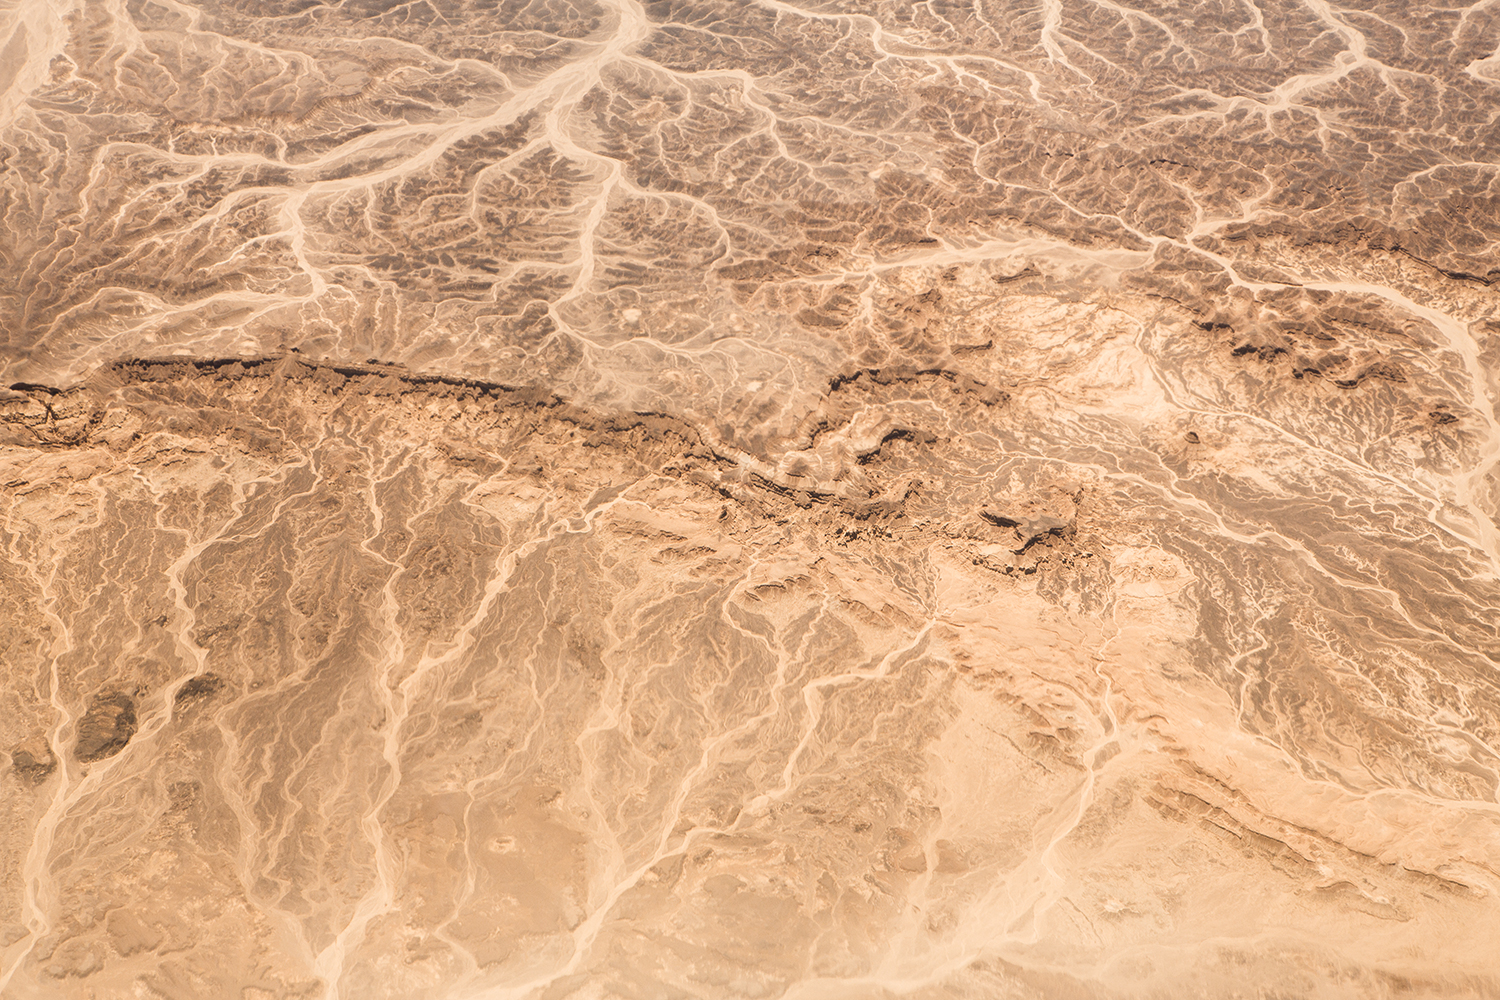  Deserts - Survey #2, 2015 //  80 cm x 120 cm  